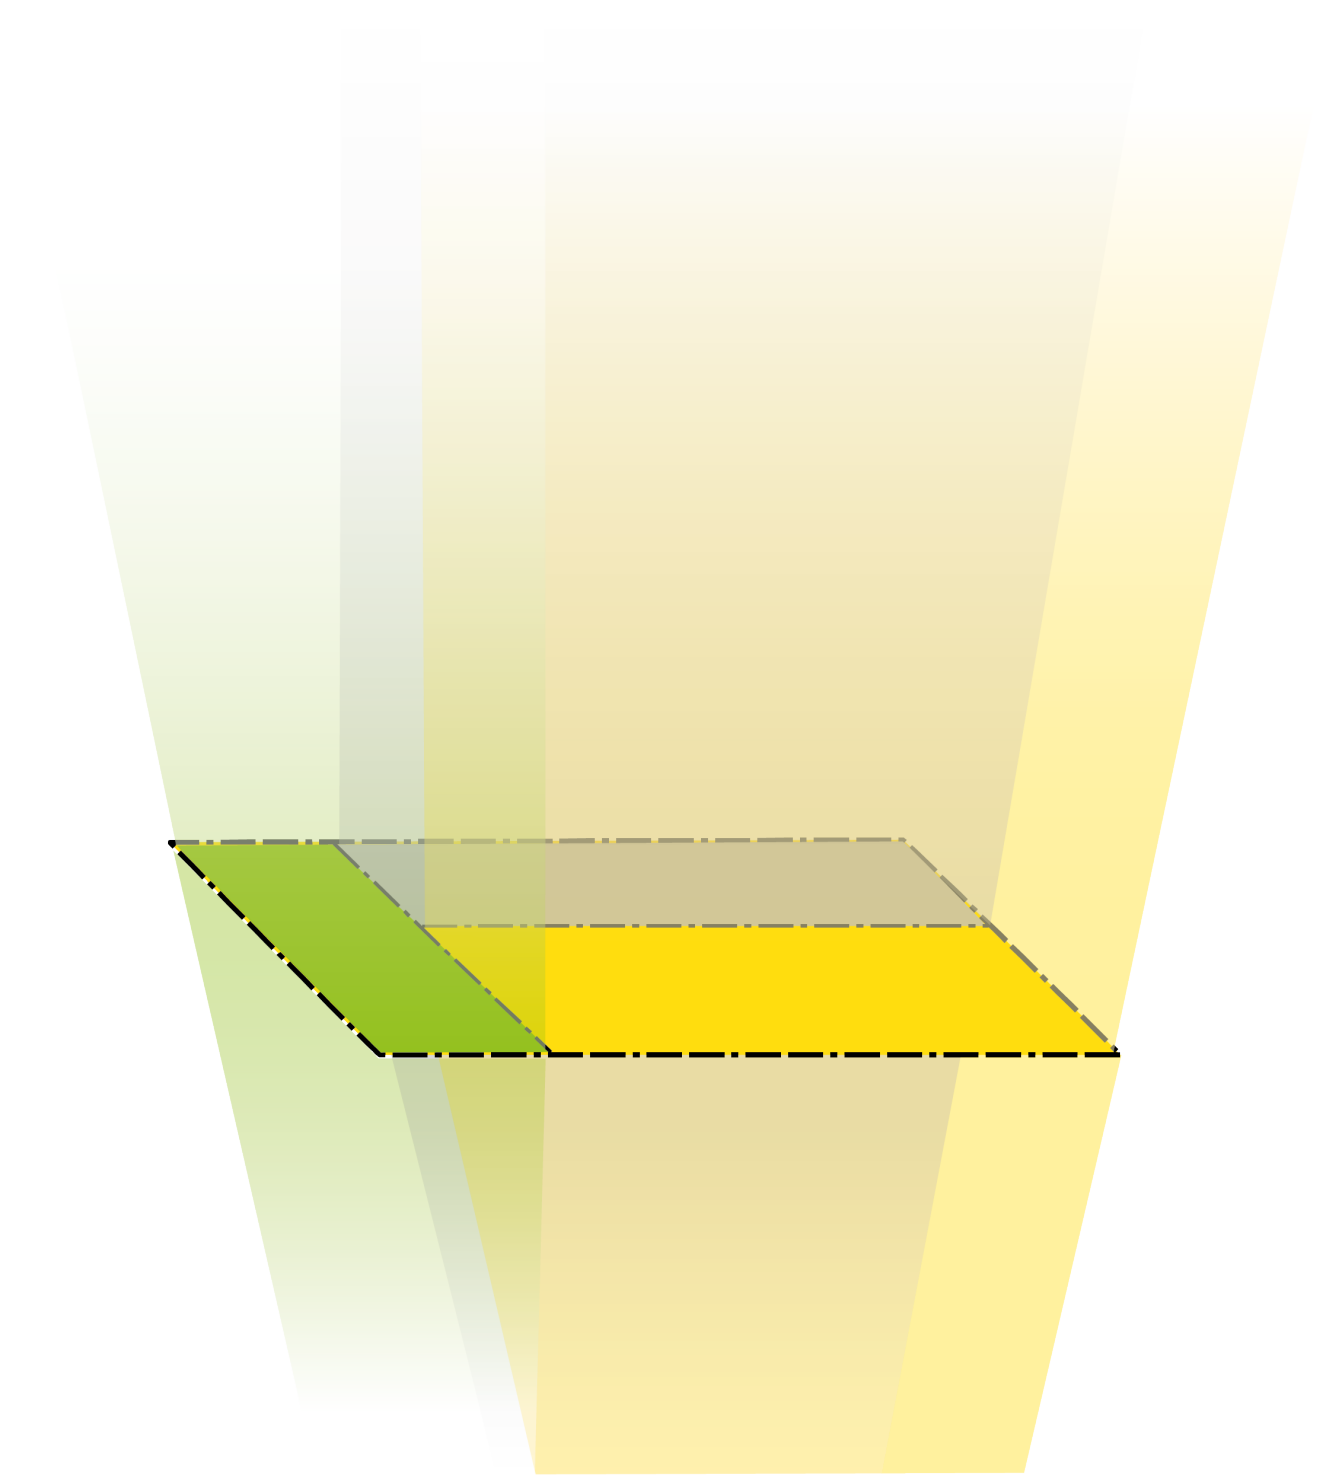 En detaljplan som är illustrerad genom tre olikfärgade fält. Fälten projiceras för att illustra en volym.